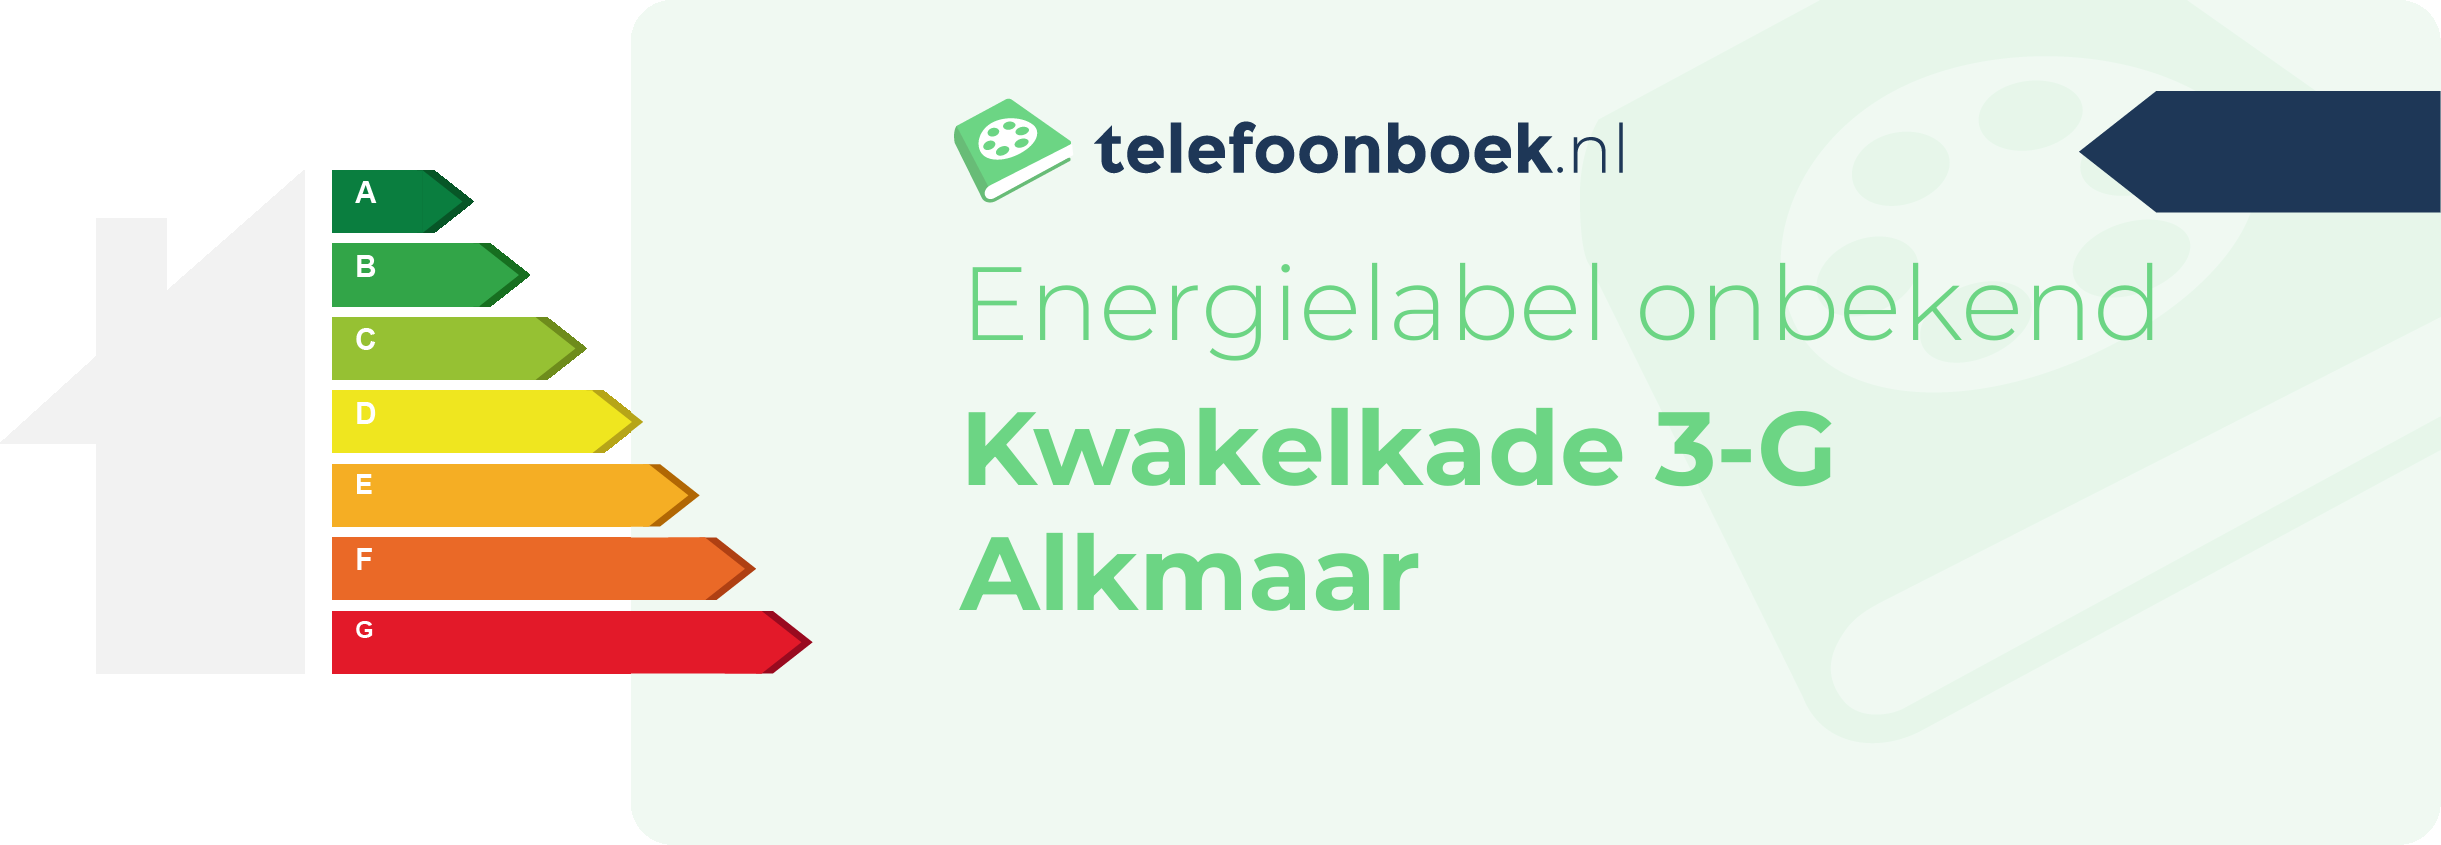 Energielabel Kwakelkade 3-G Alkmaar